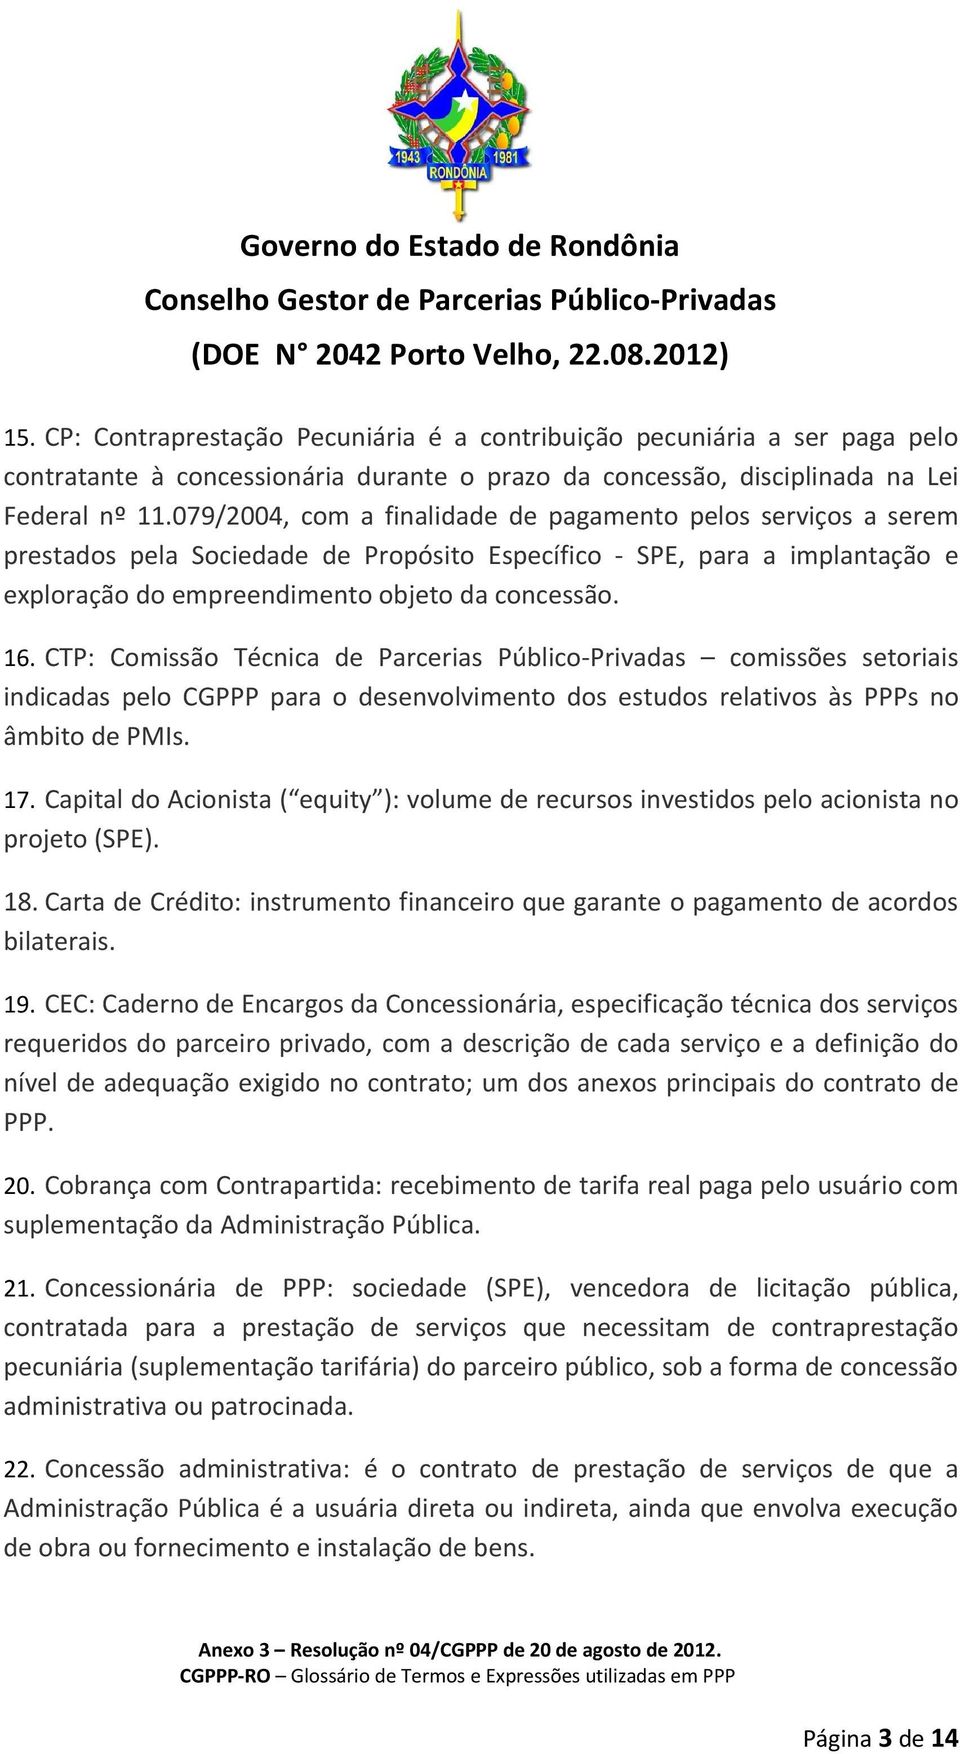 CTP: Comissão Técnica de Parcerias Público-Privadas comissões setoriais indicadas pelo CGPPP para o desenvolvimento dos estudos relativos às PPPs no âmbito de PMIs. 17.